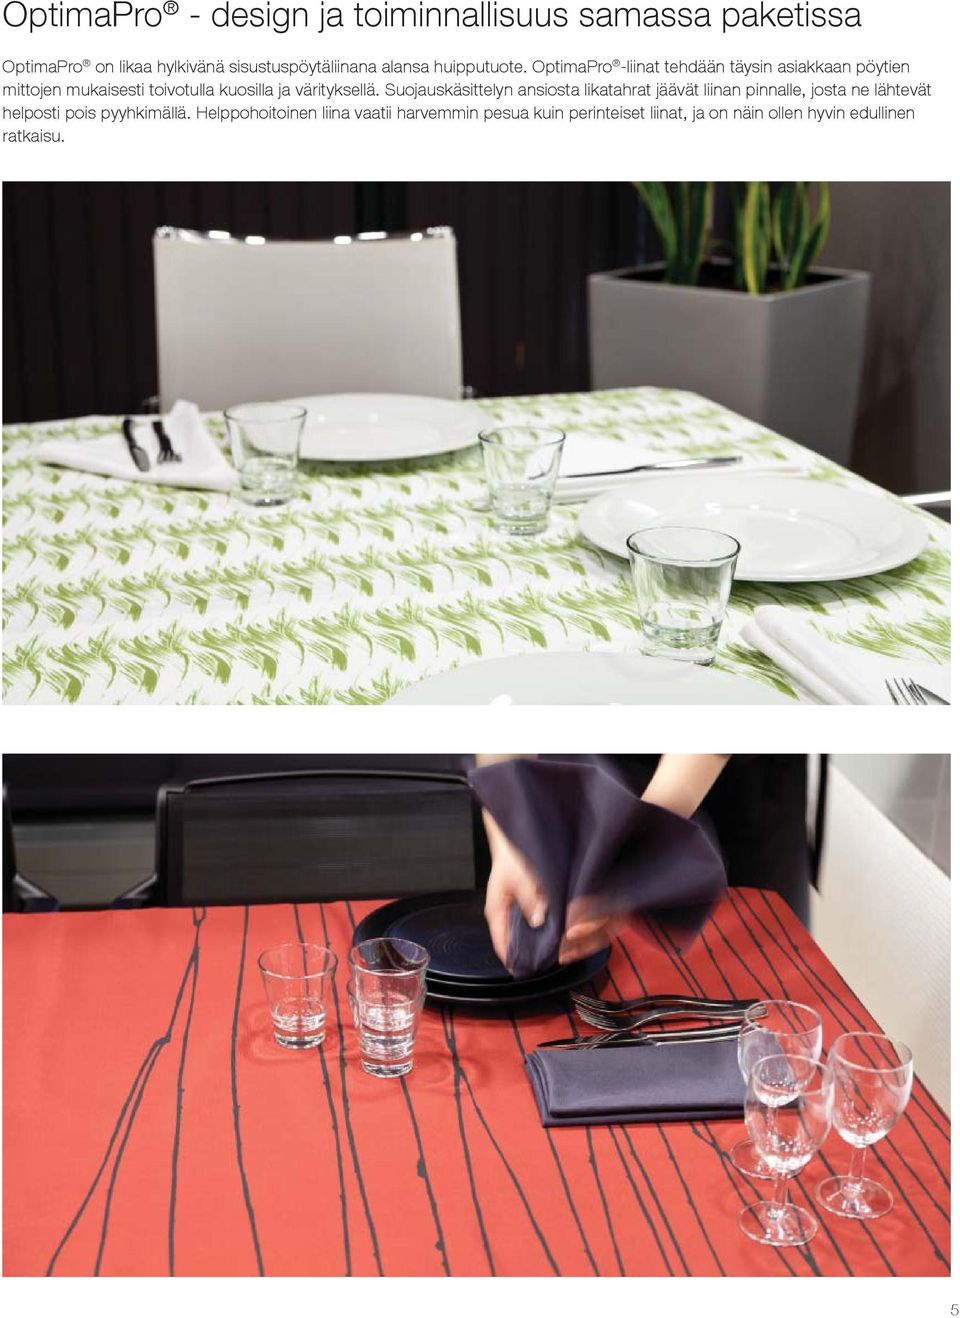 OptimaPro -liinat tehdään täysin asiakkaan pöytien mittojen mukaisesti toivotulla kuosilla ja värityksellä.